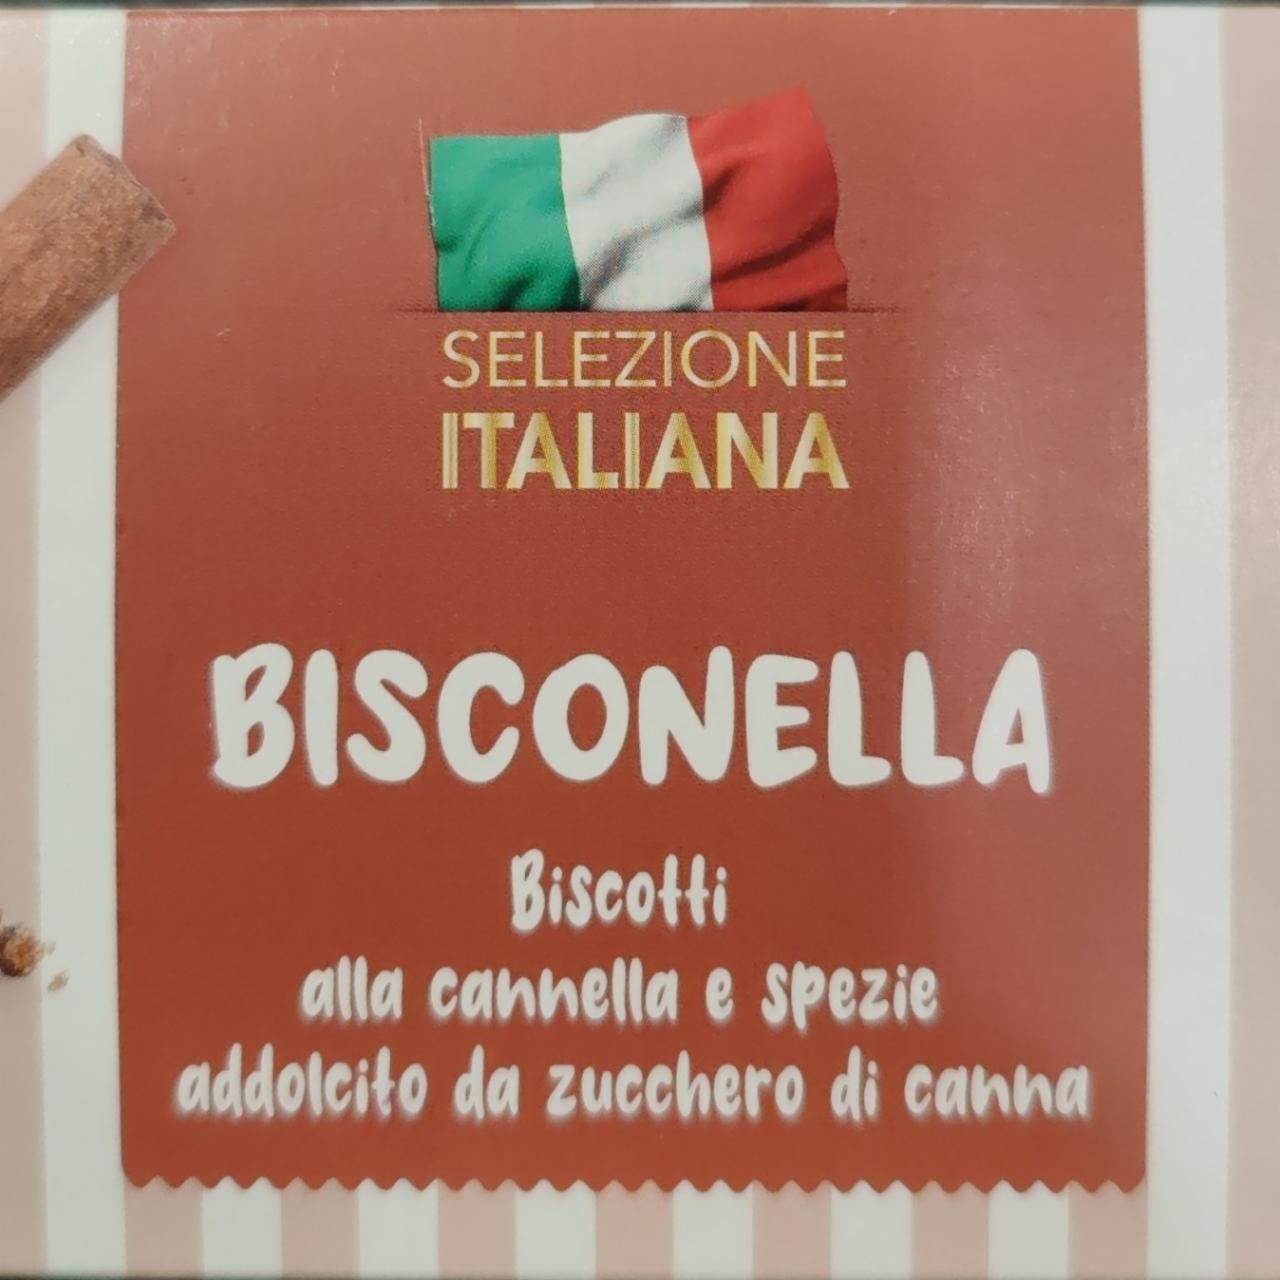 Фото - Печенье пряное с корицей Bisconella Selezione Italiana